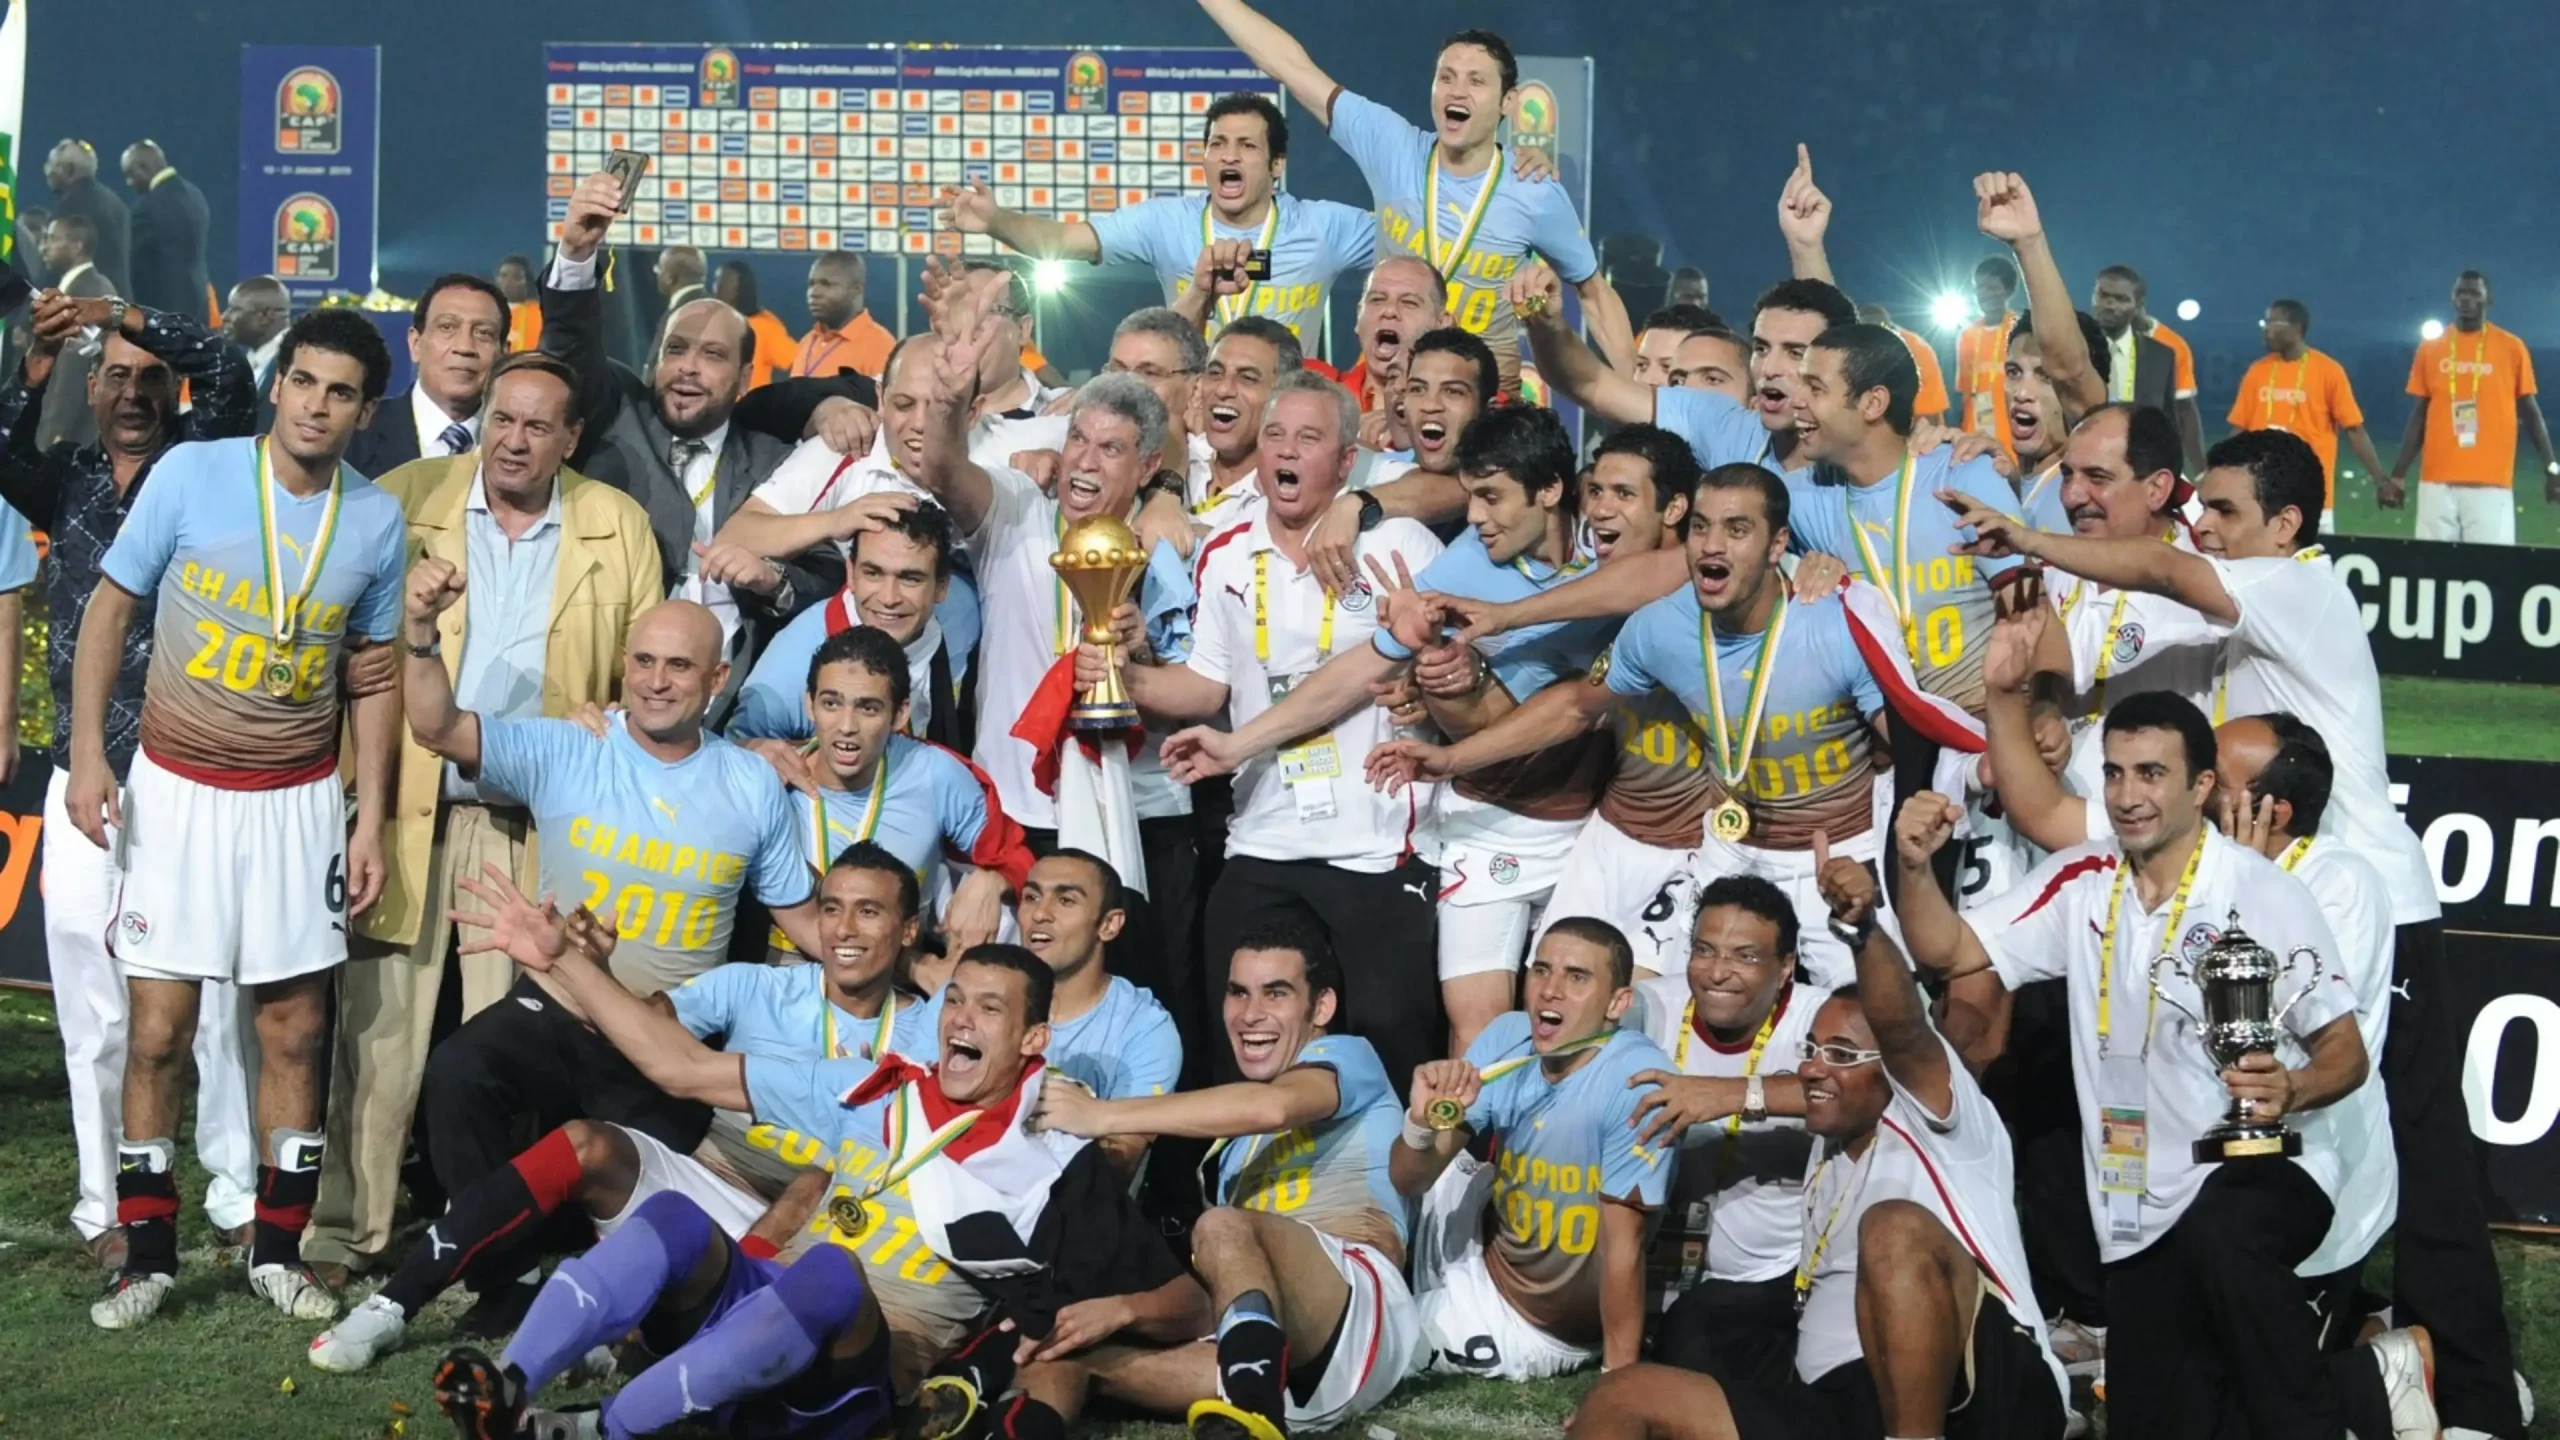 موعد مباراة مصر والرأس الأخضر في بطولة كأس أمم إفريقيا 2023